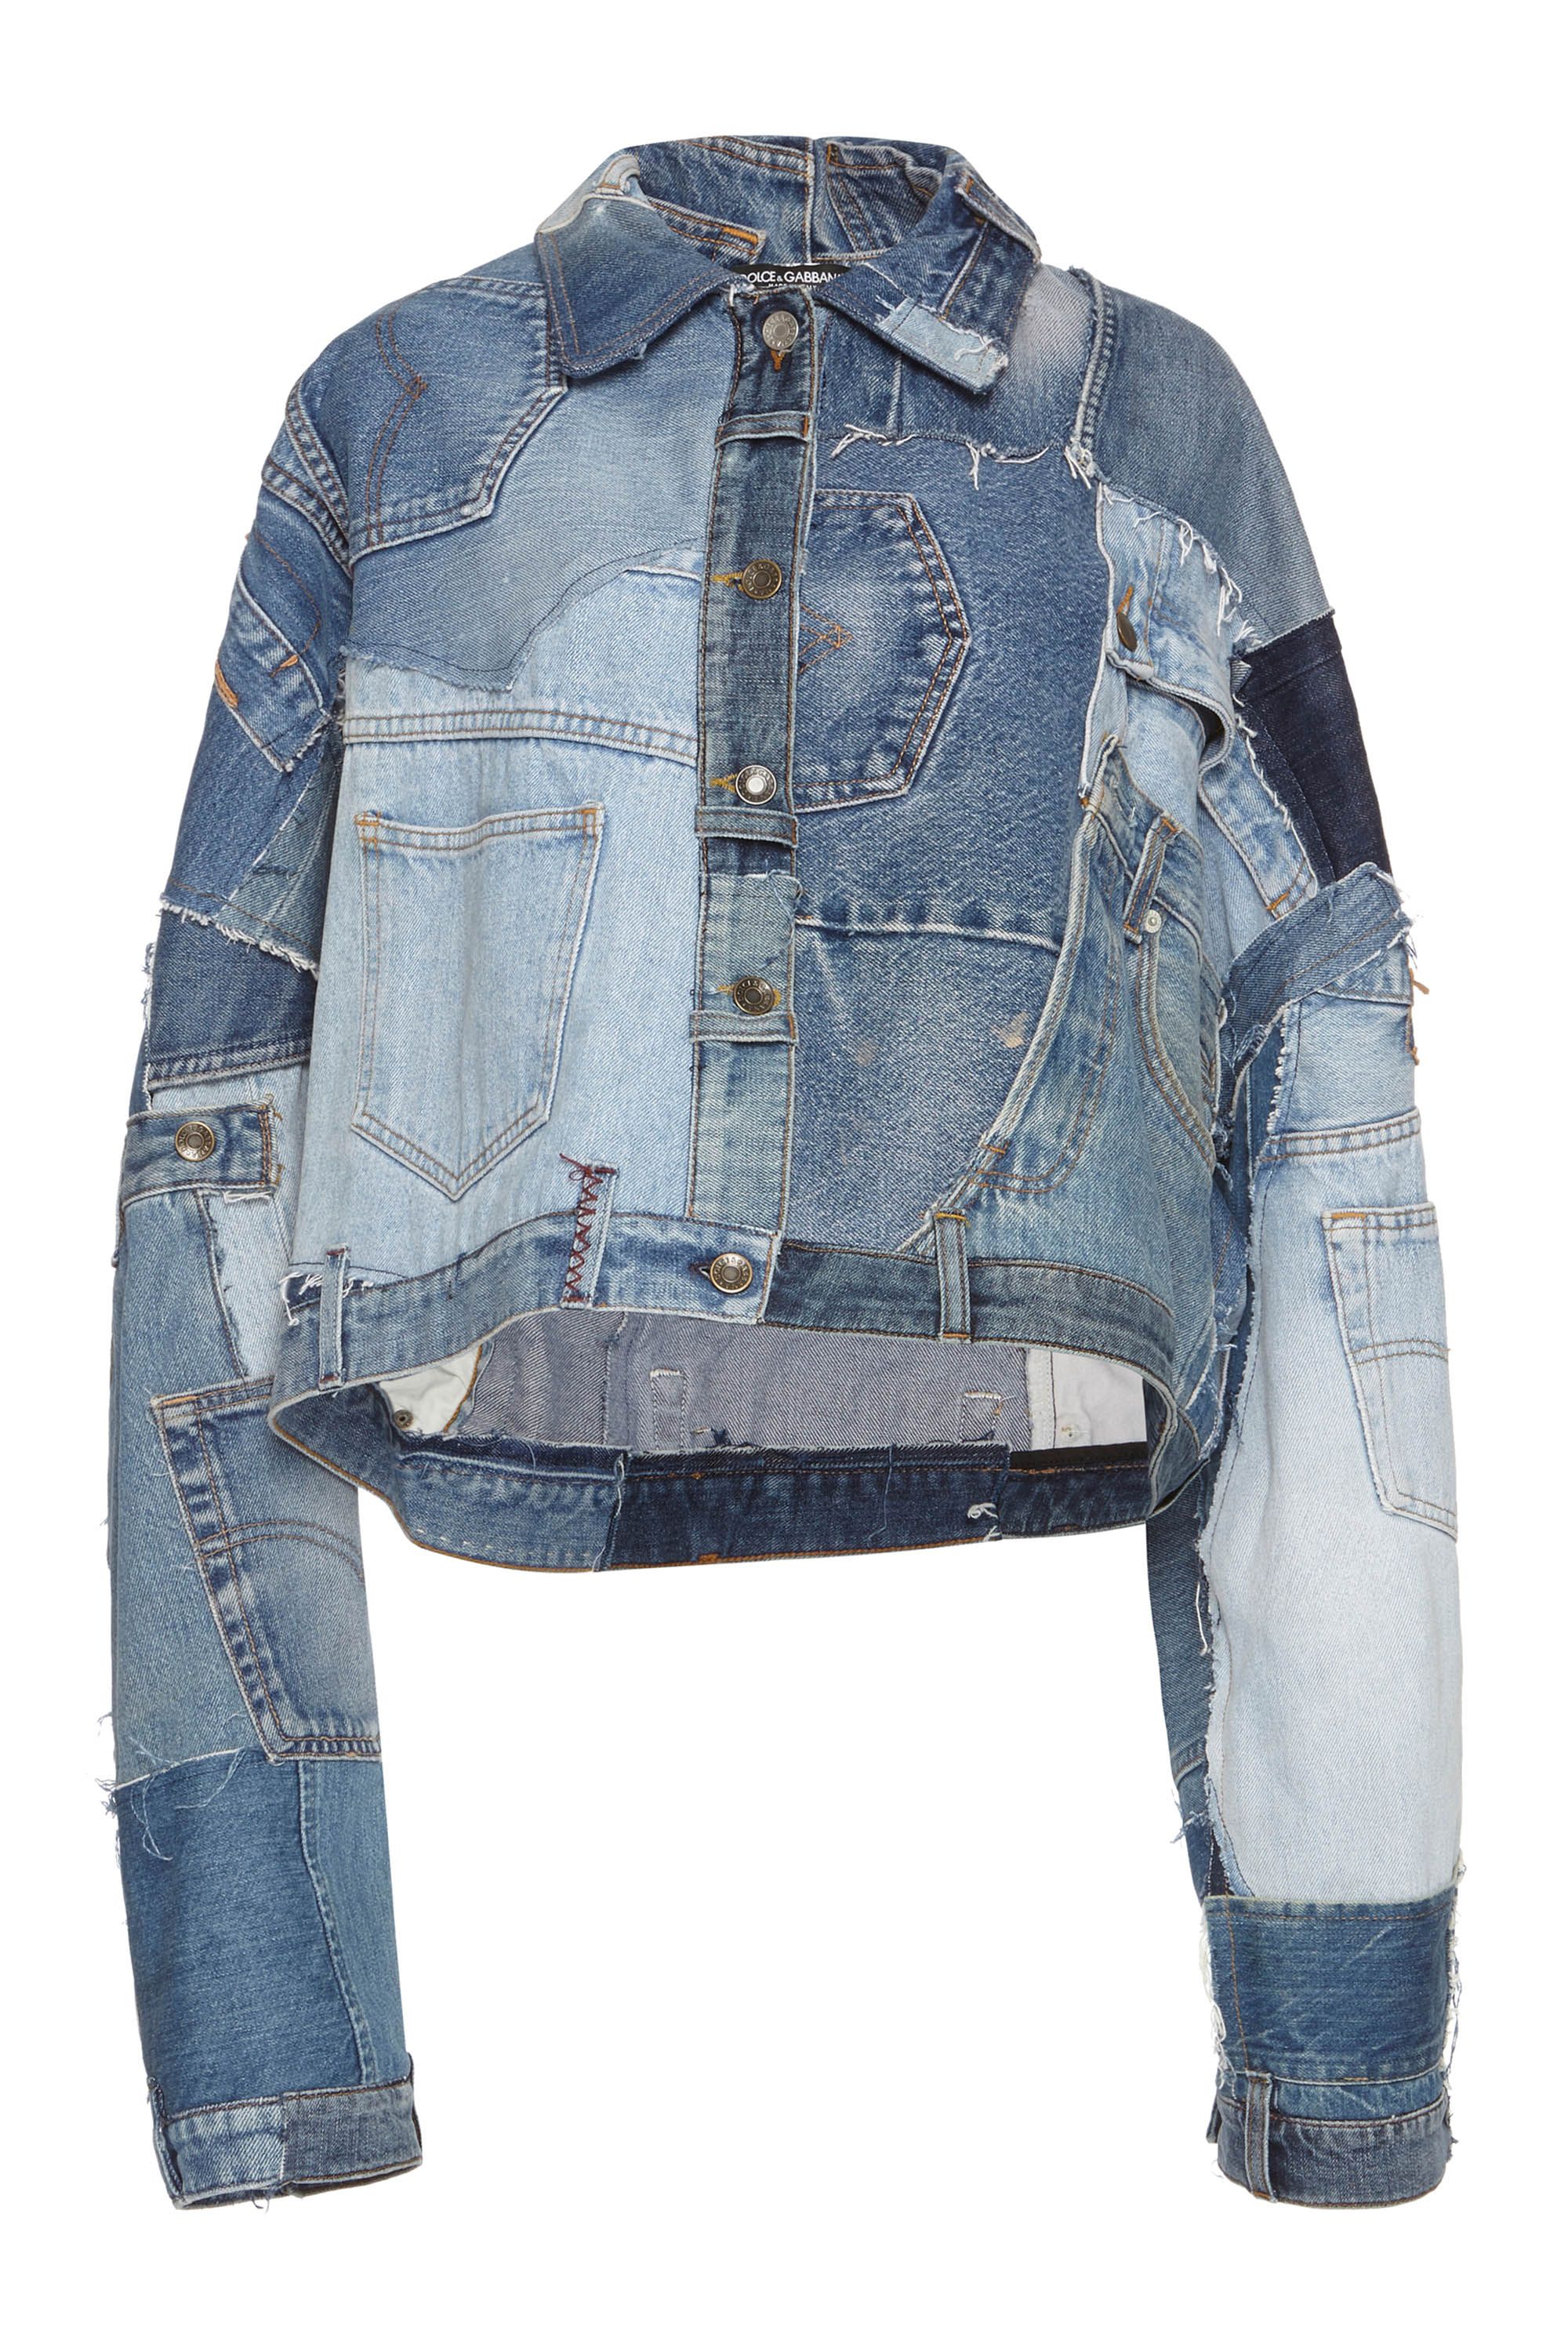 højde Dekorative Lægge sammen 15 Denim Jackets for Women - Classic Jean Jacket Options for Summer 2016